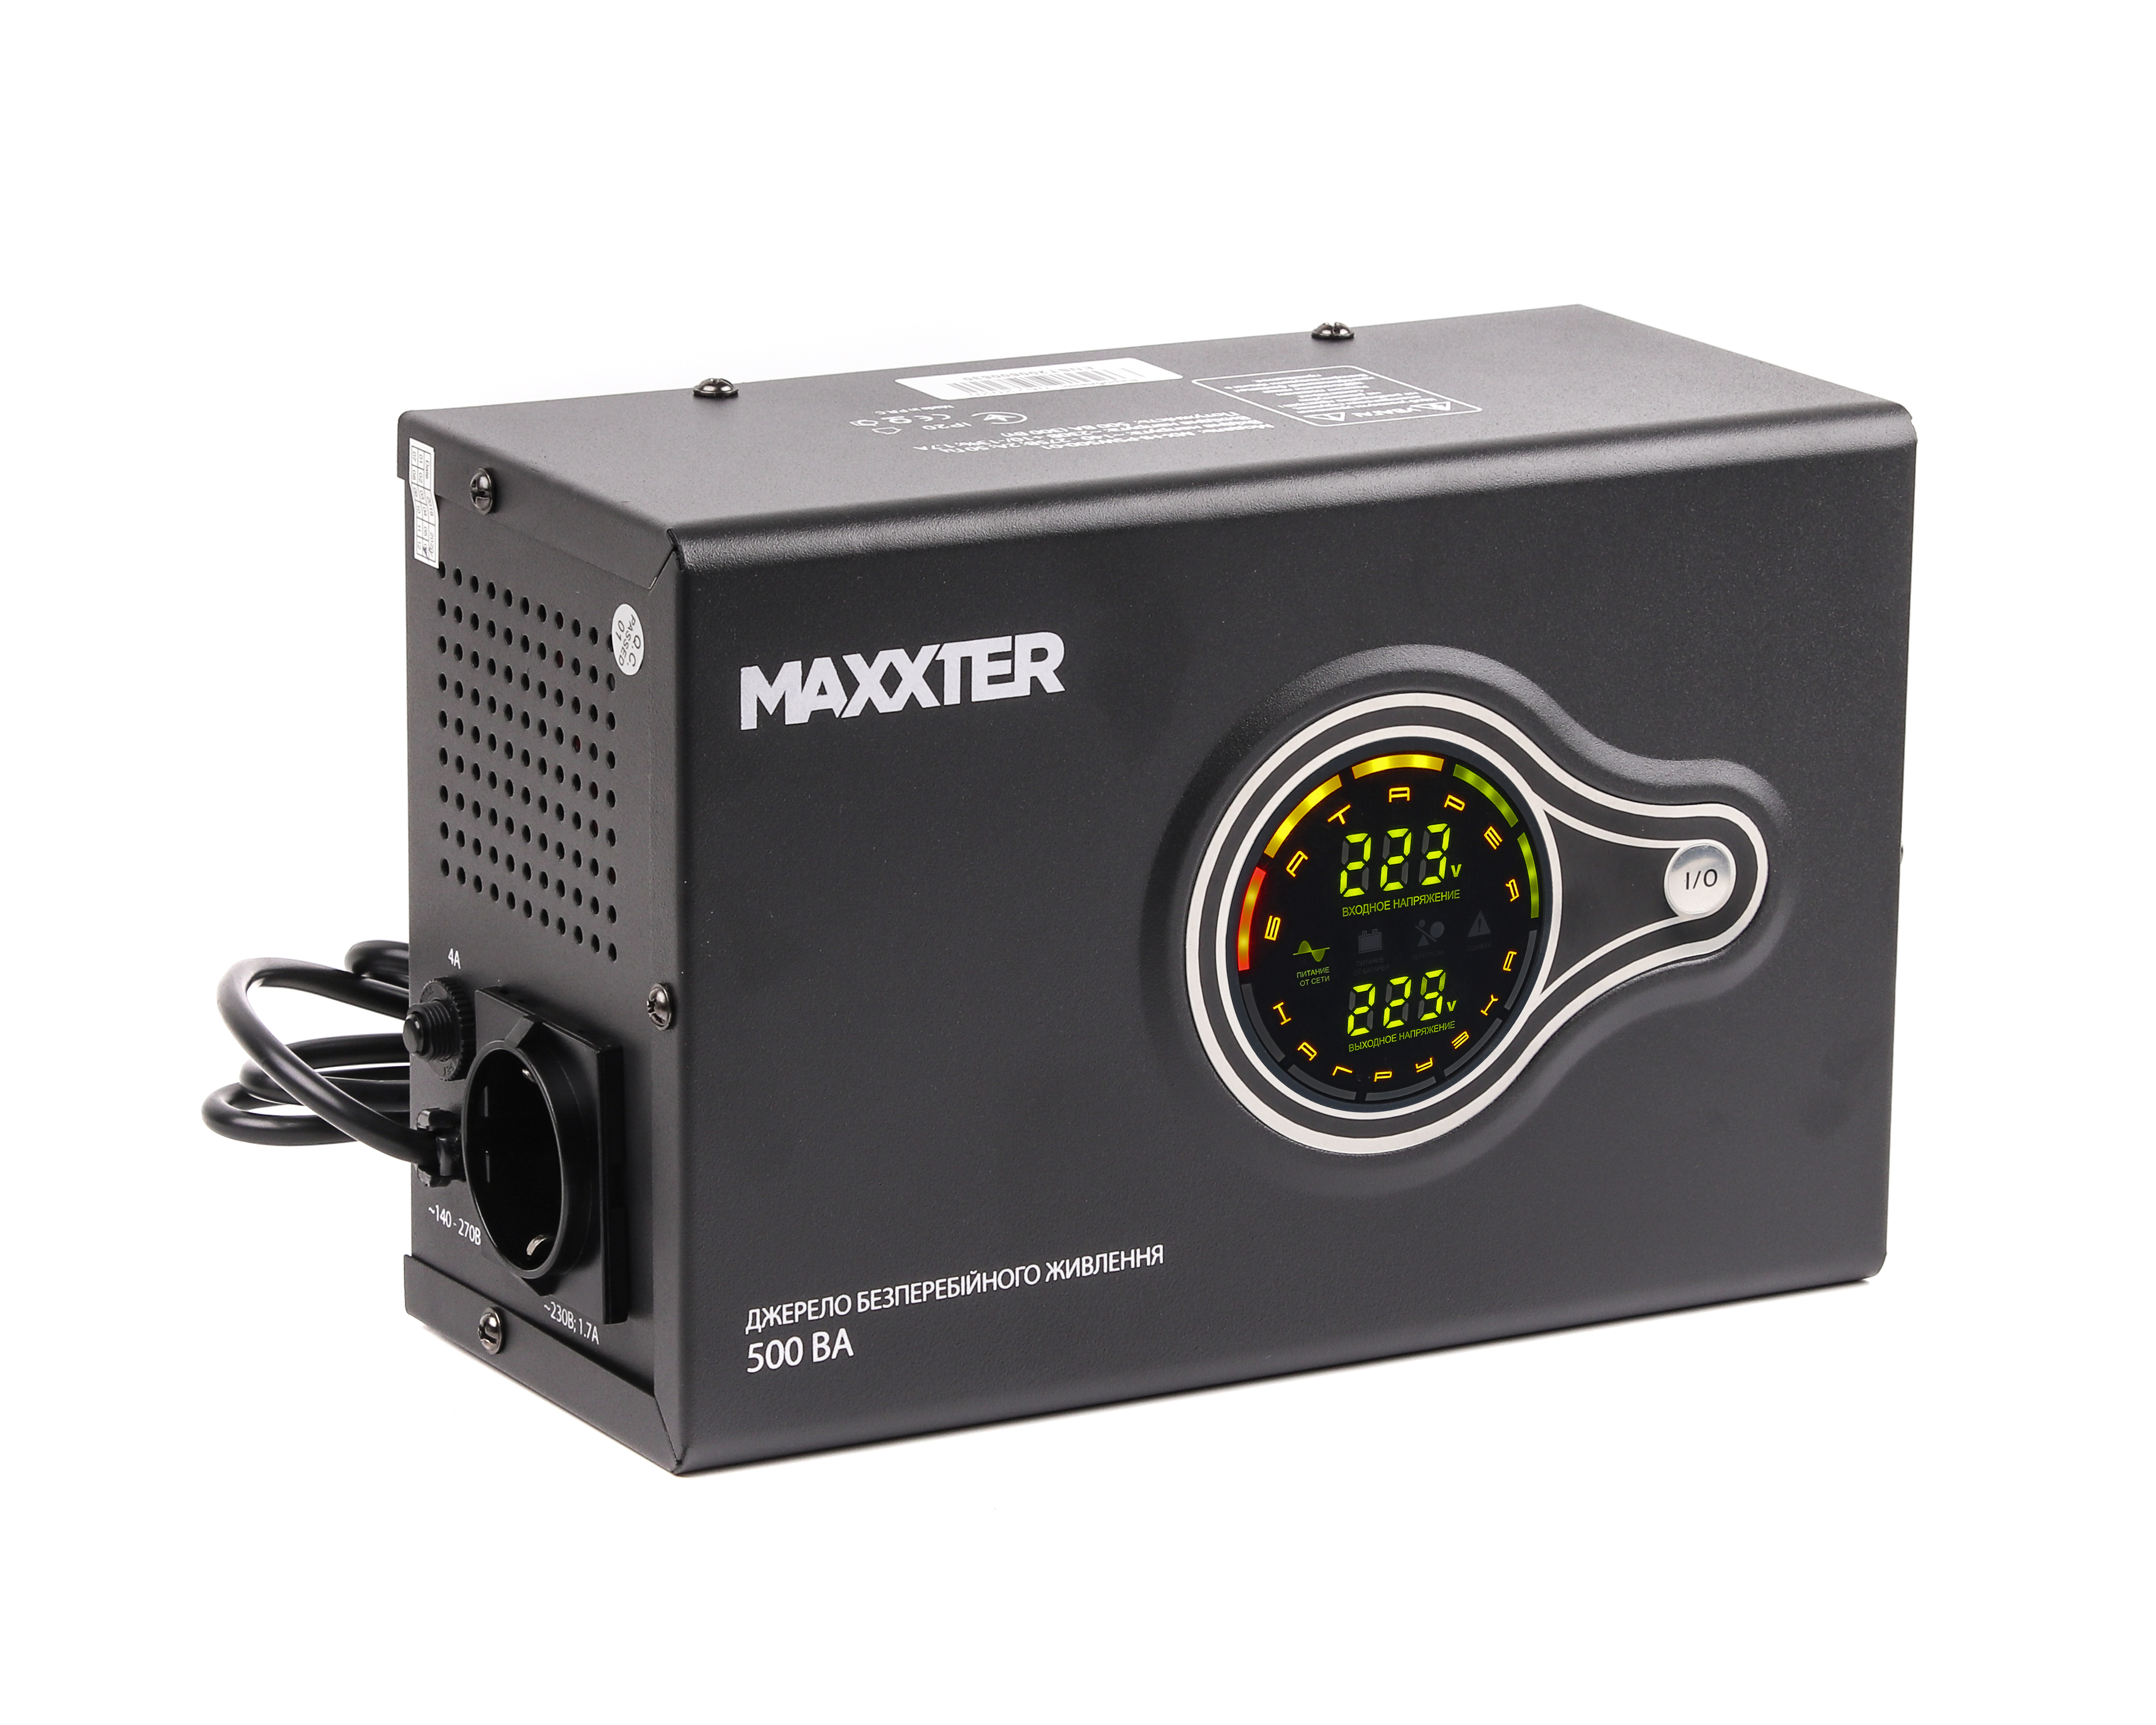 Характеристики джерело безперебійного живлення Maxxter MX-HI-PSW500-01